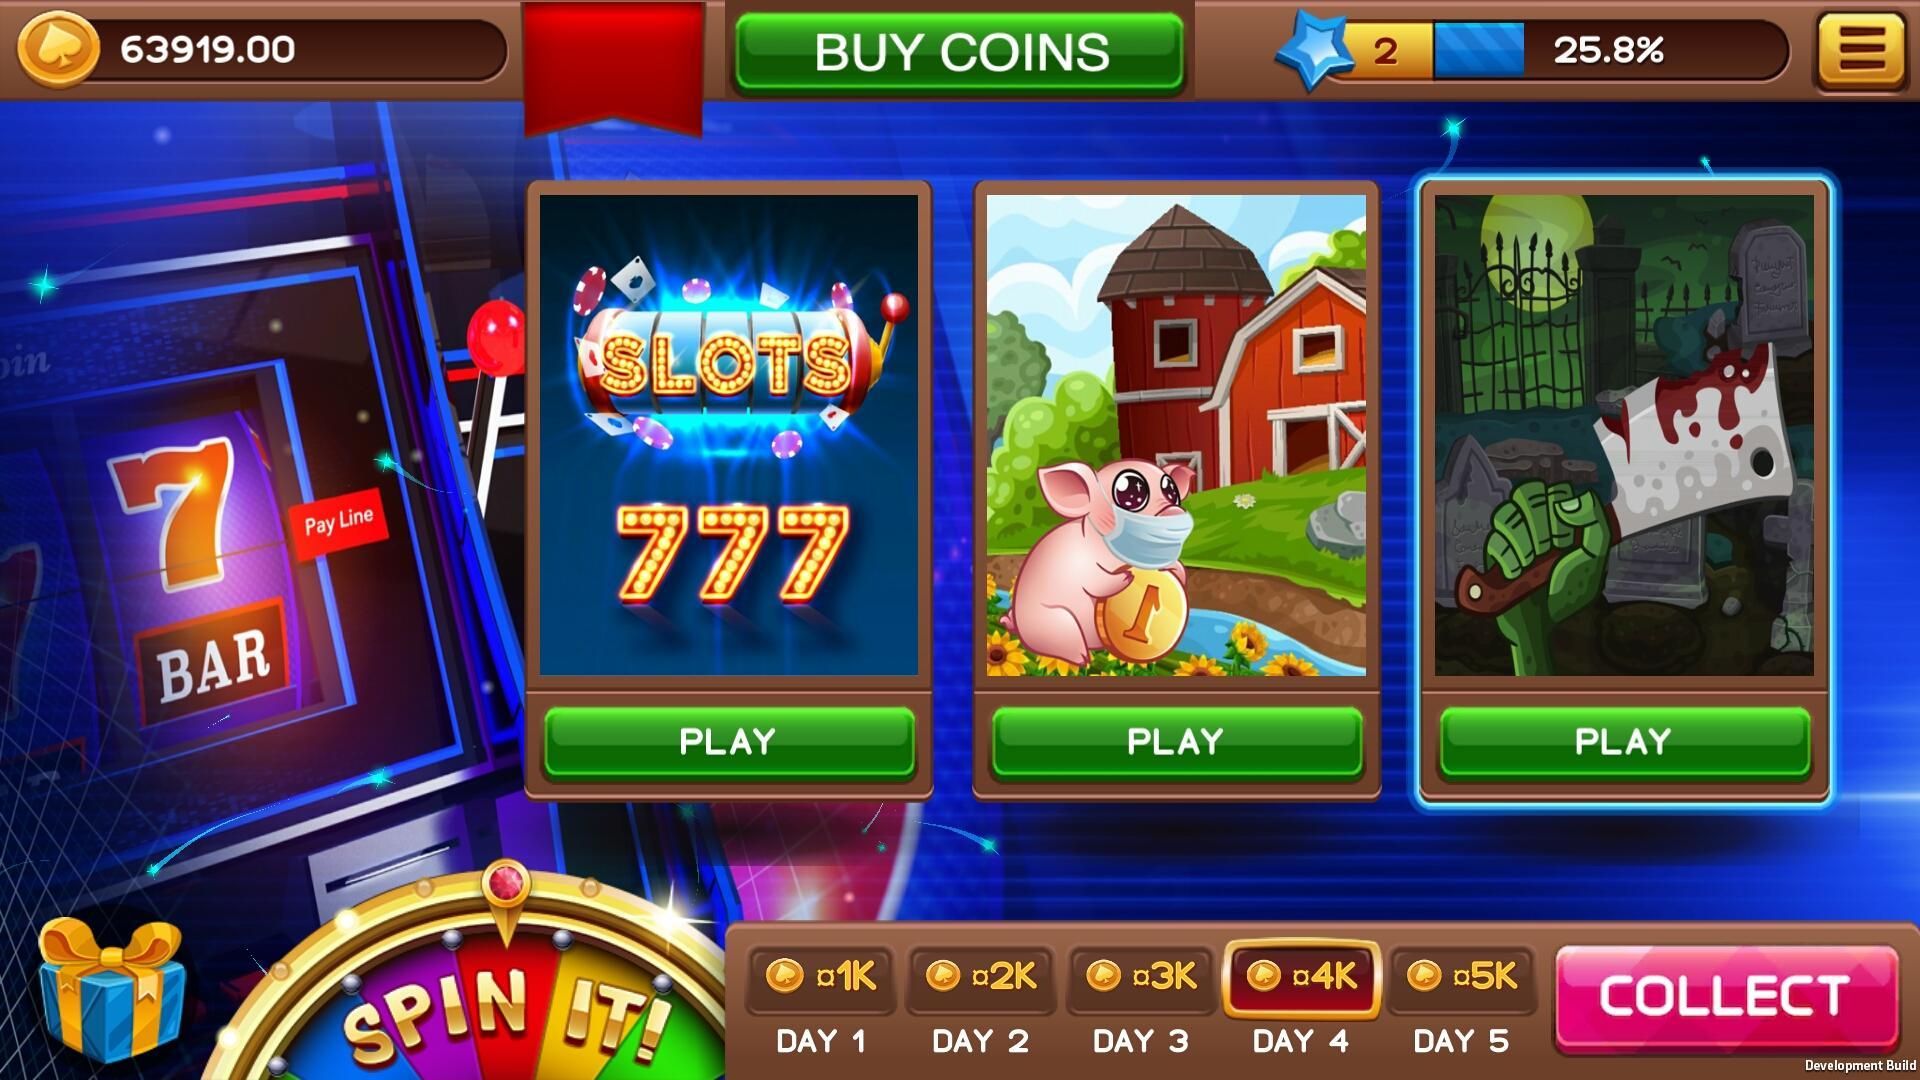 Игровые автоматы казино император играть бесплатно и без регистрации новые игры 777 онлайн казино со ставкой от 1 копейки